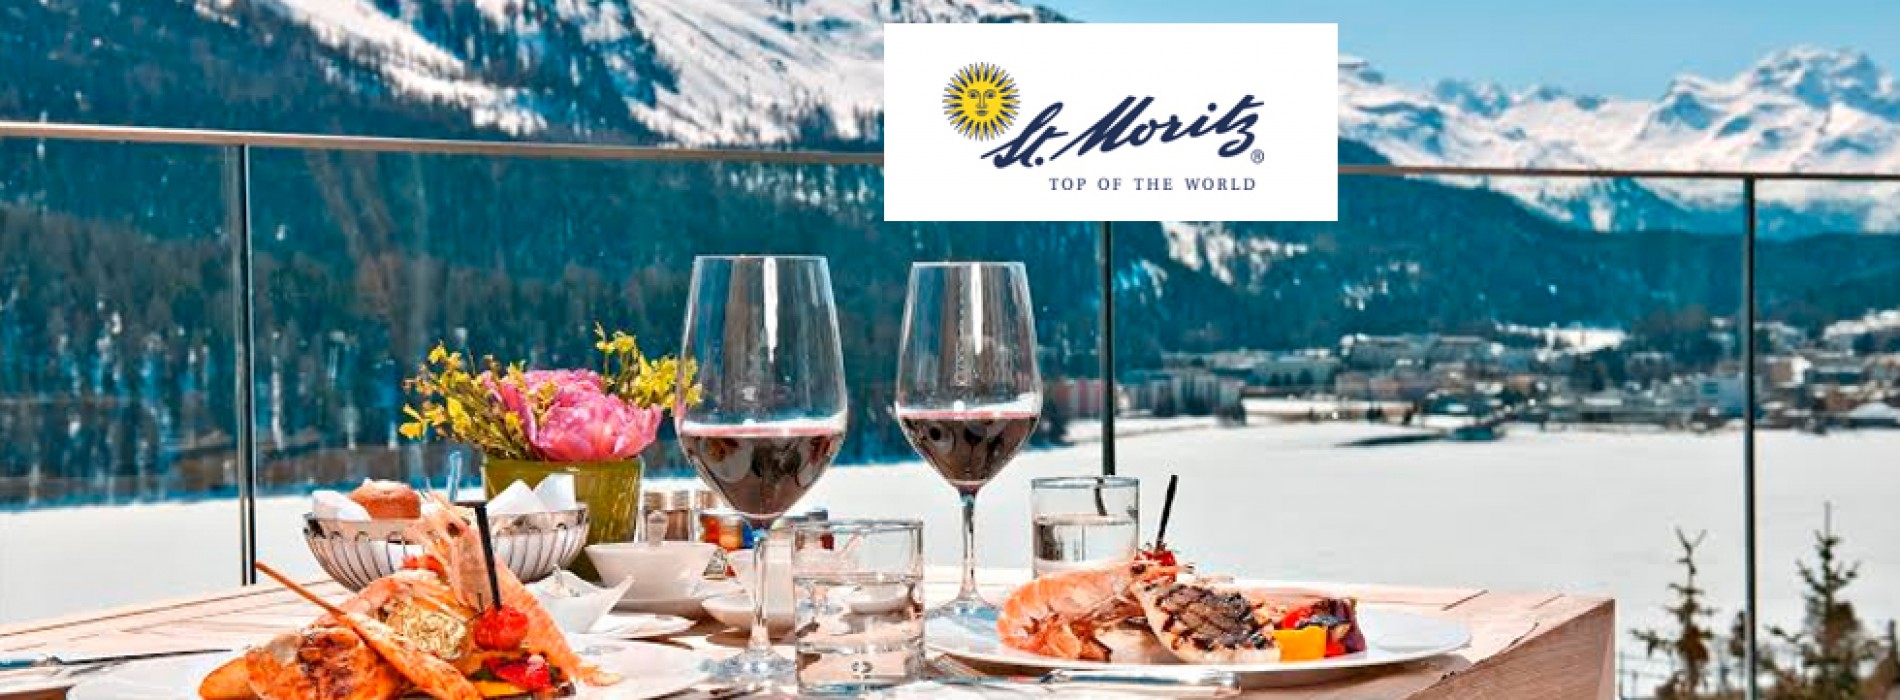 St. Moritz Gourmet Festival: James Kent at the Carlton Hotel St. Moritz